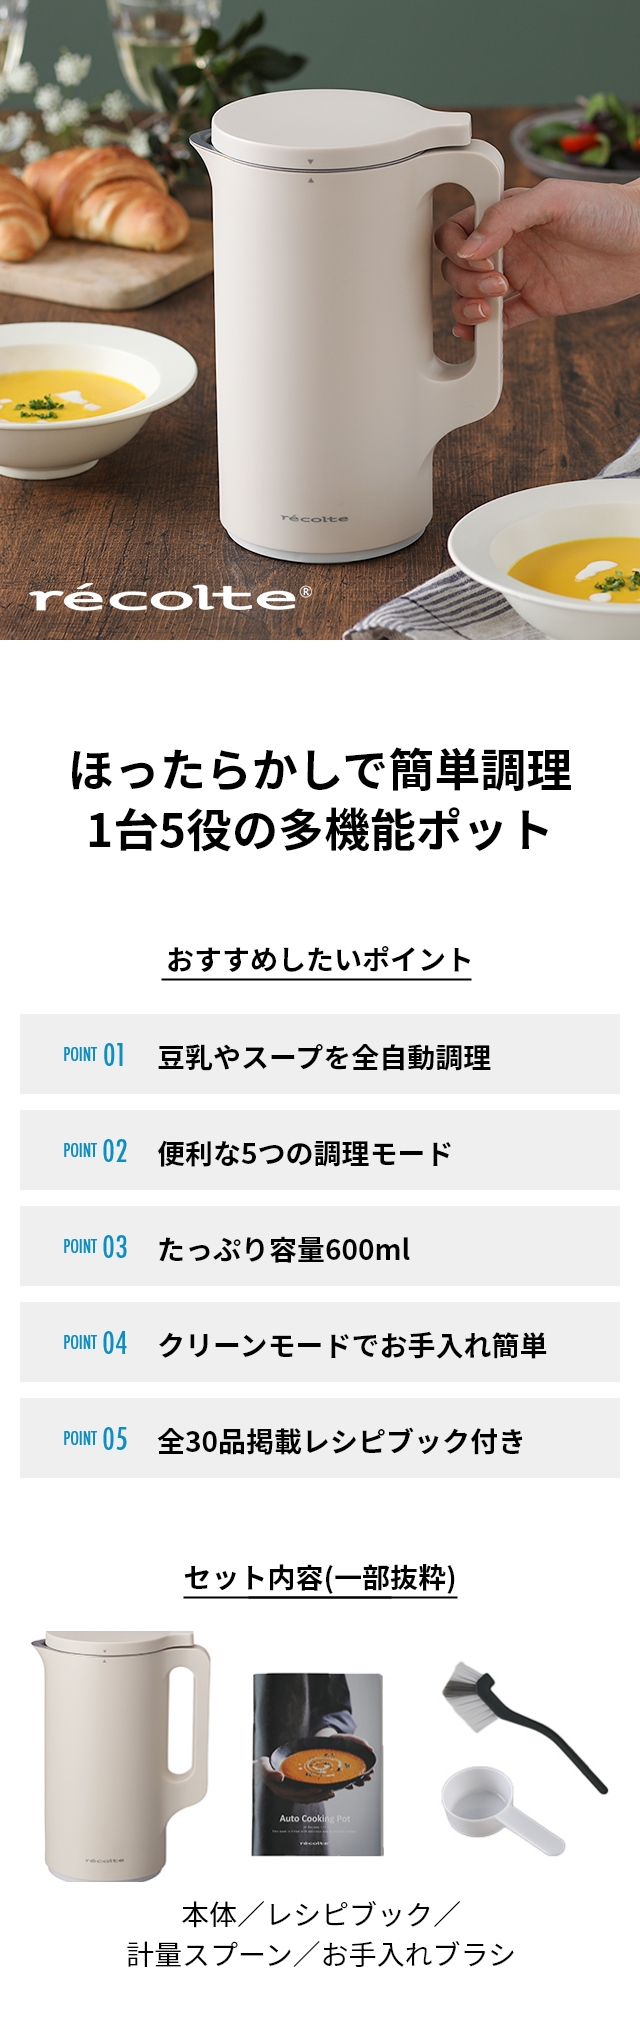 レコルト 【選べる2大特典】 豆乳メーカー 自動調理ポット RSY-2-W ...